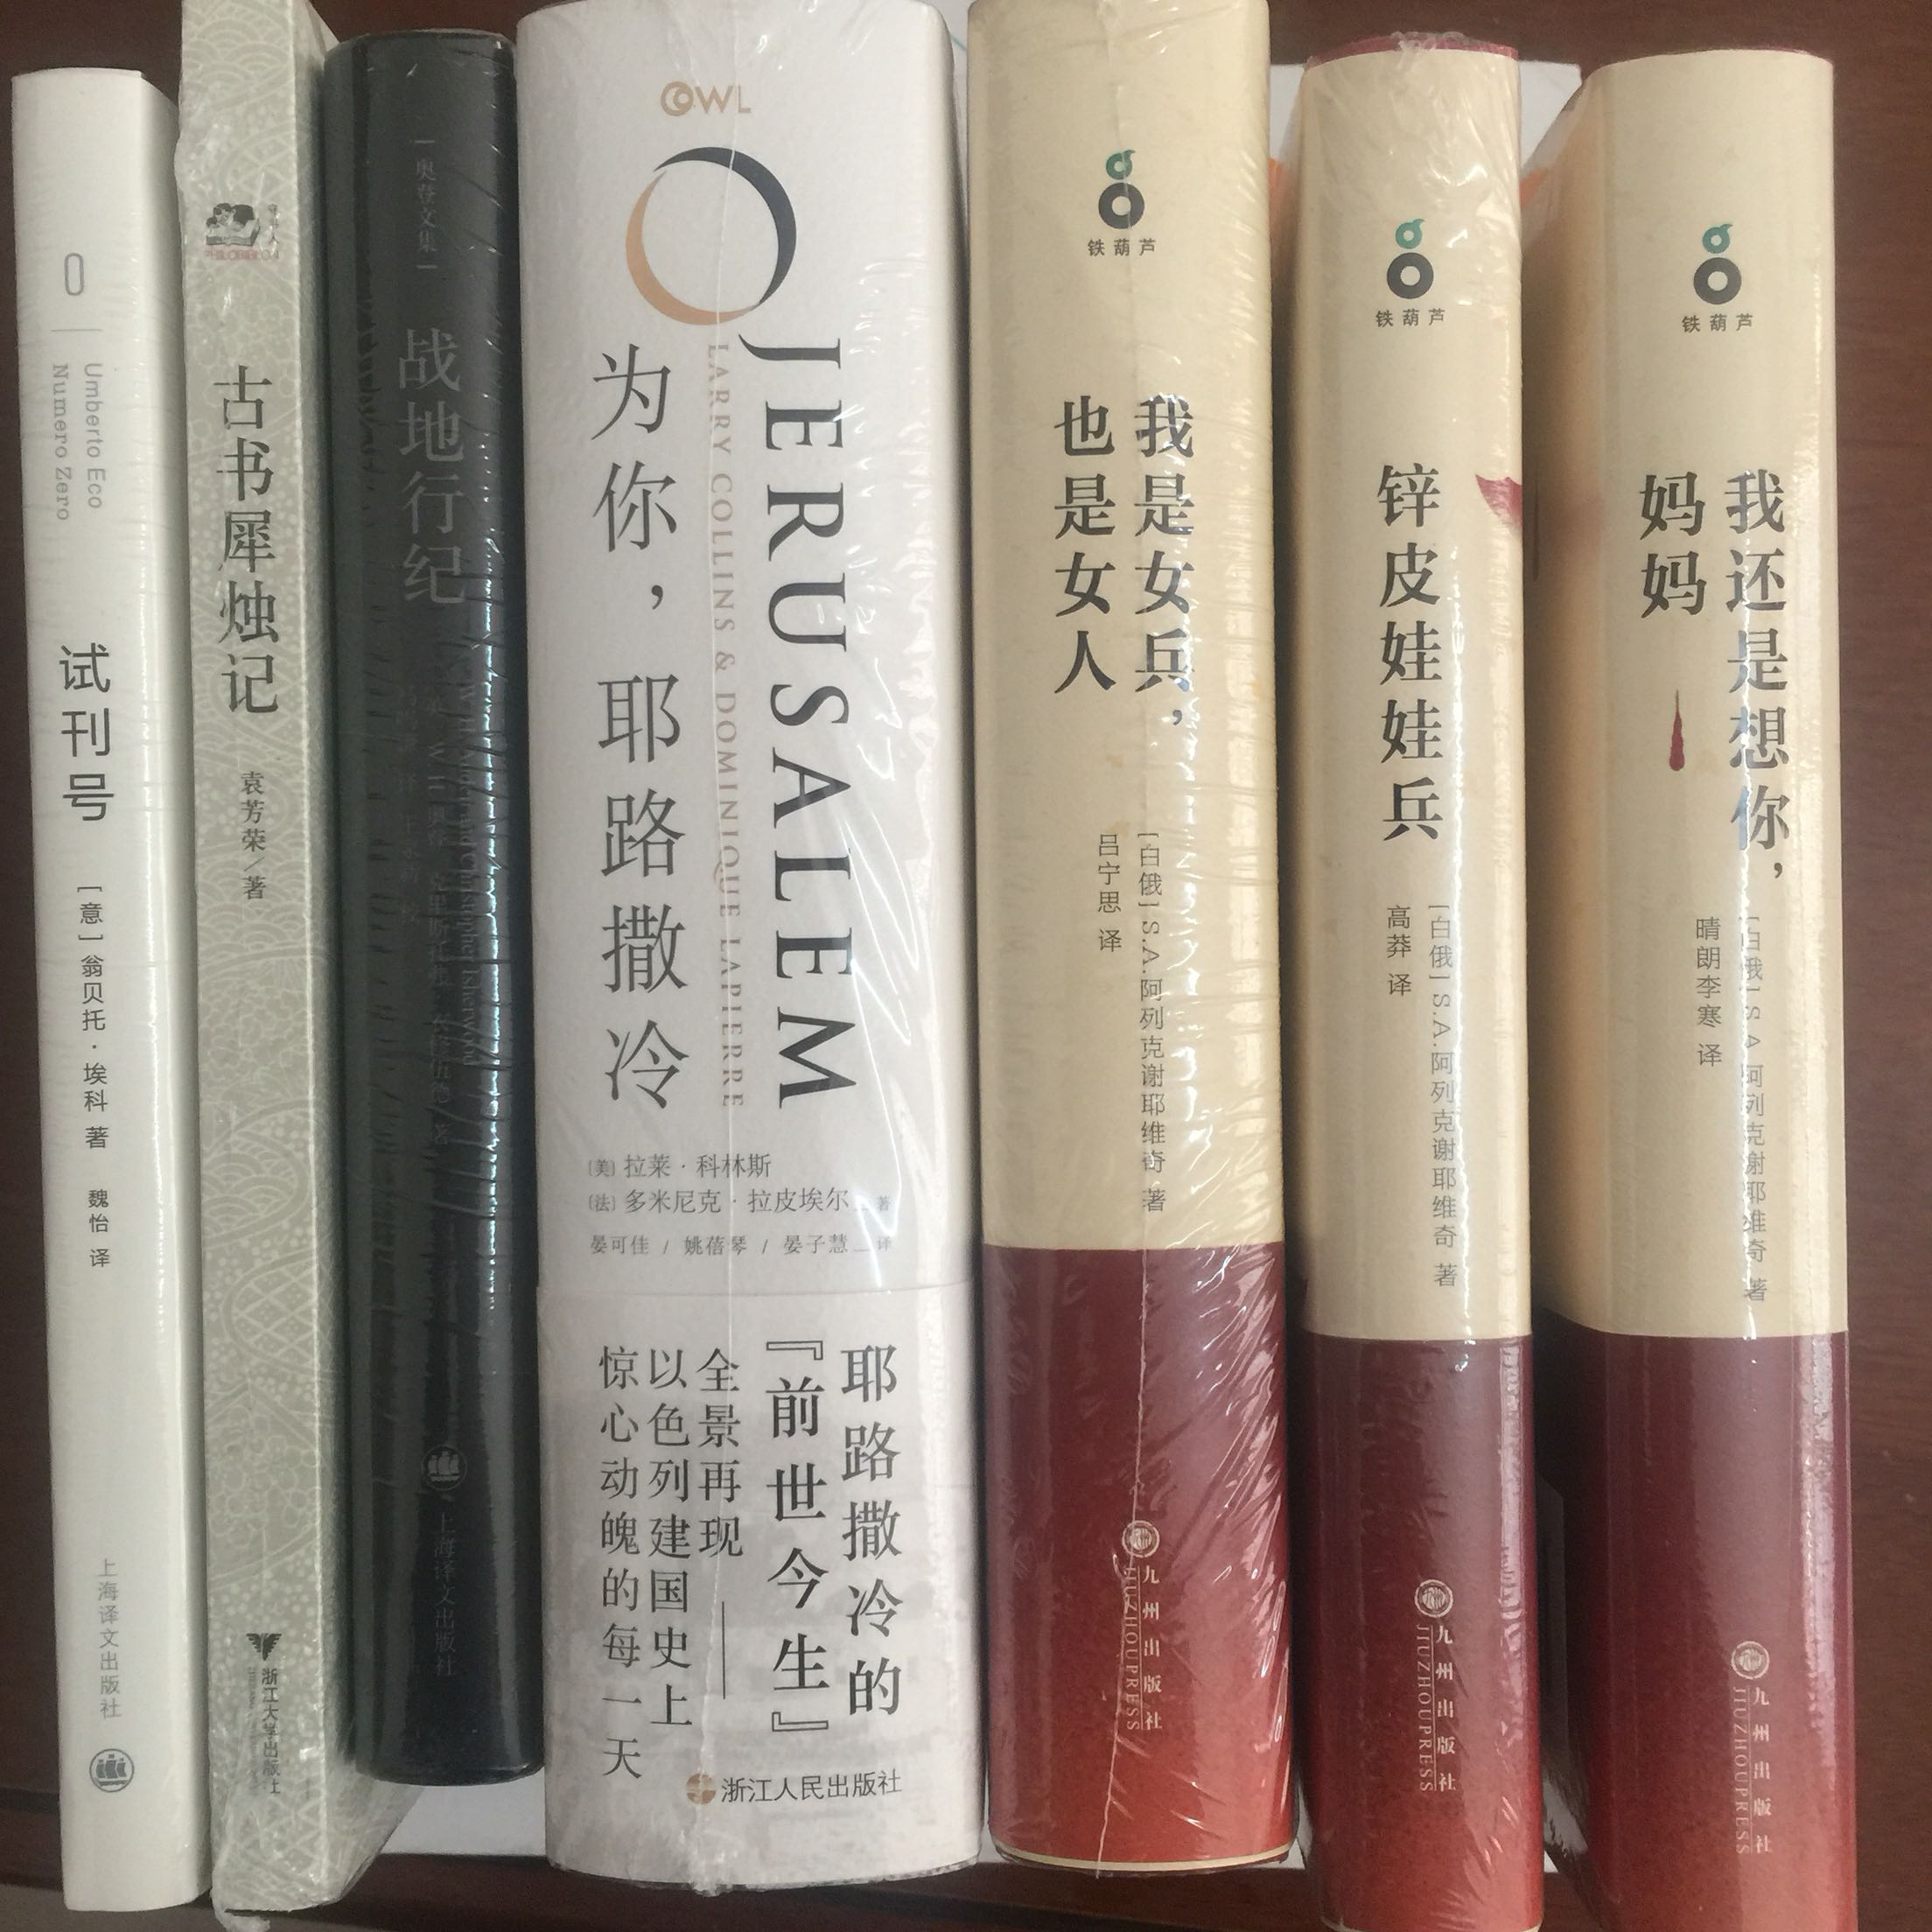 上海译文出版的奥登的书就差这一本了